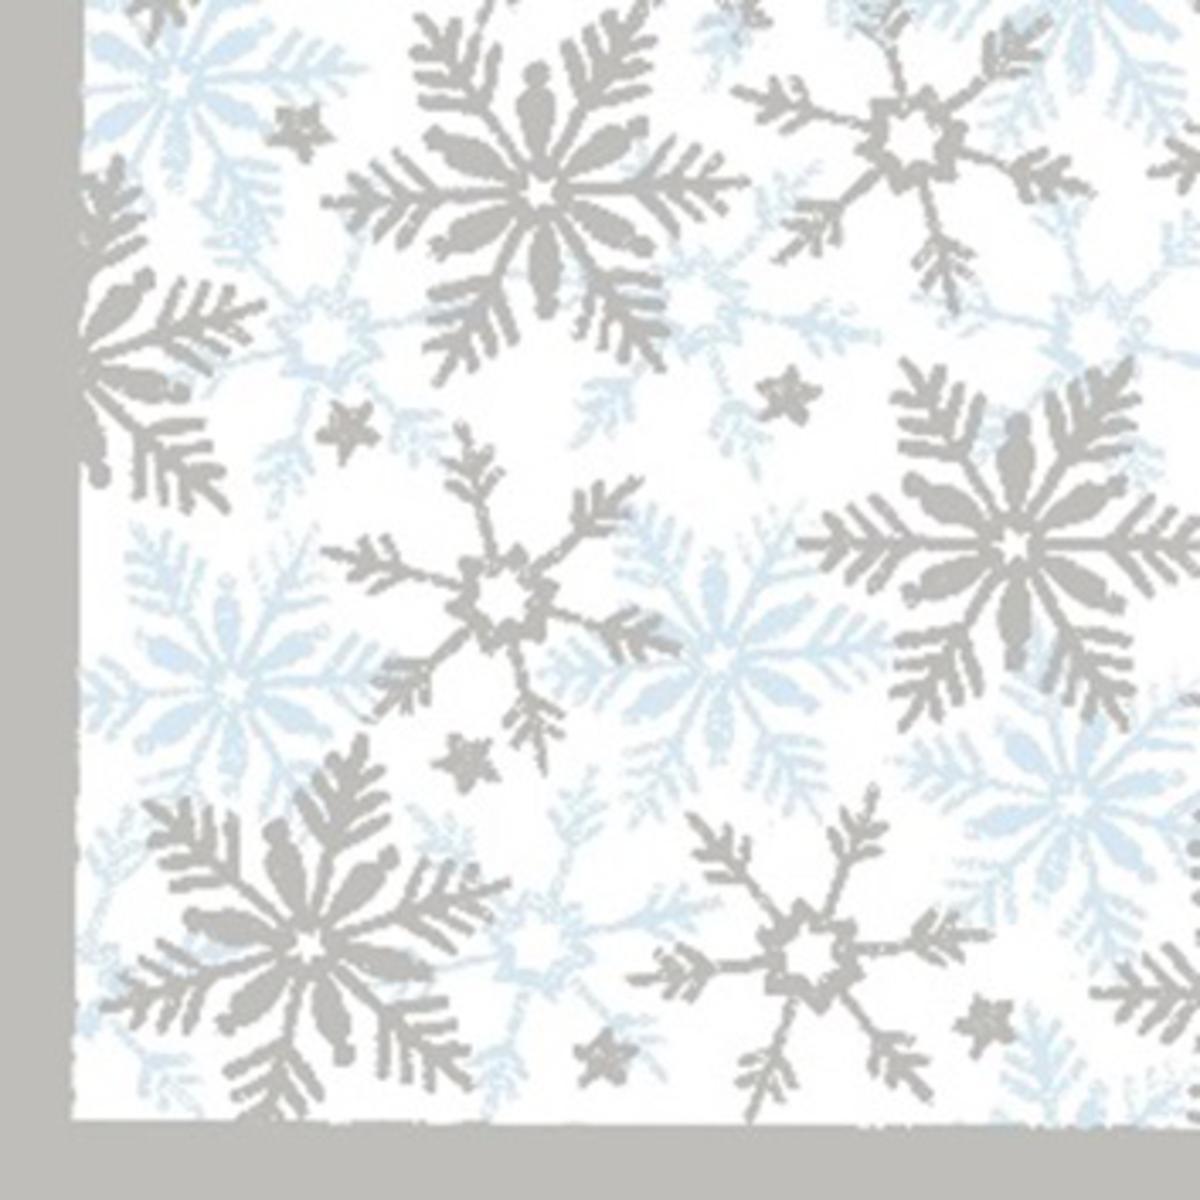 Lot de 20 serviettes imprimées - Papier - 33 x 33 cm - Blanc, gris et bleu